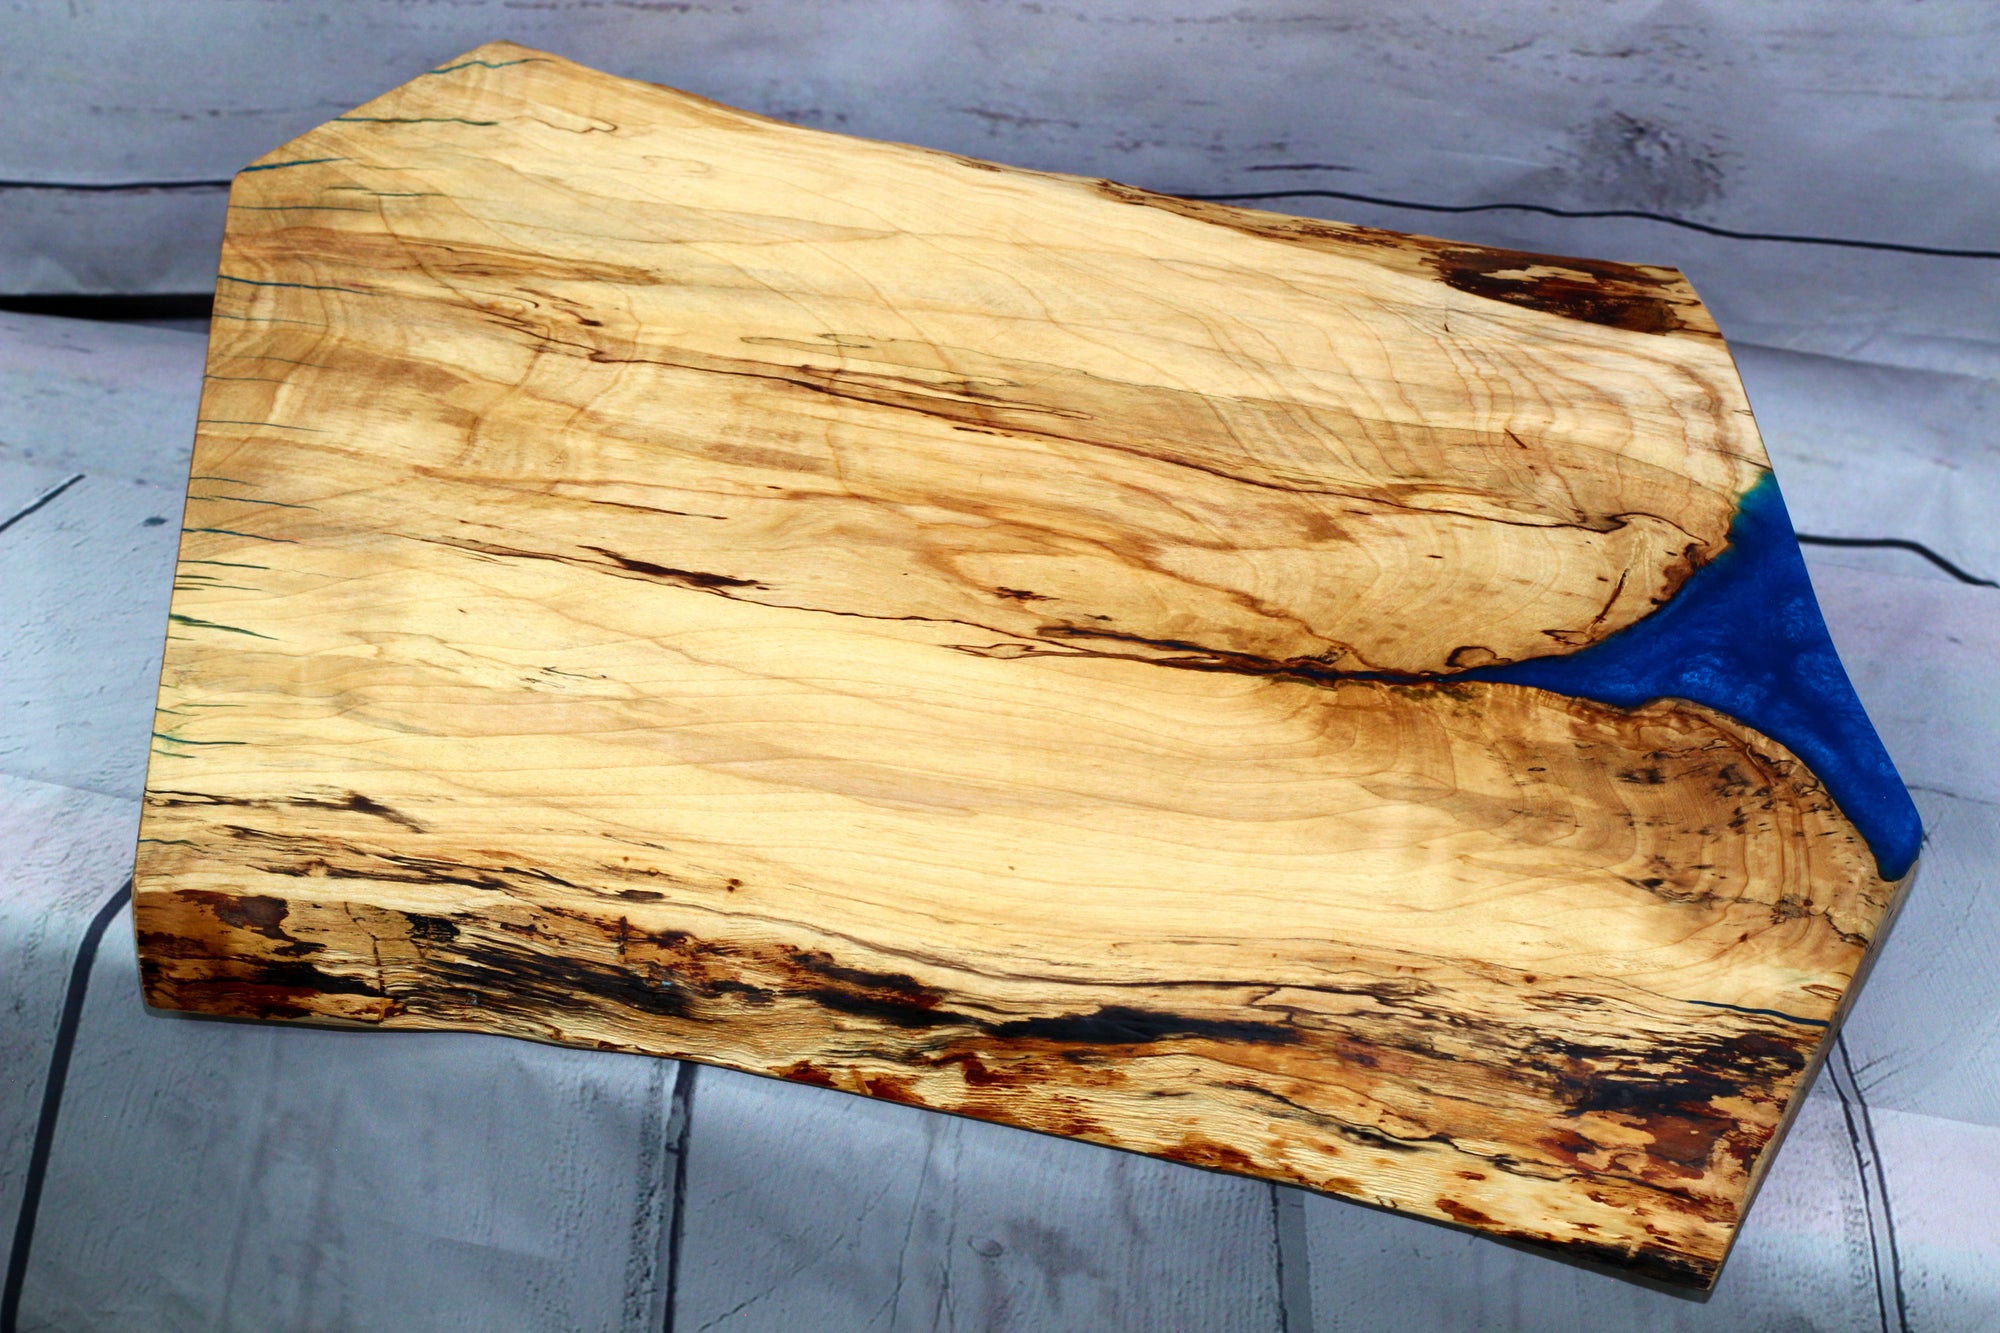 Charcuterie board (live edge birch with blue epoxy sold)